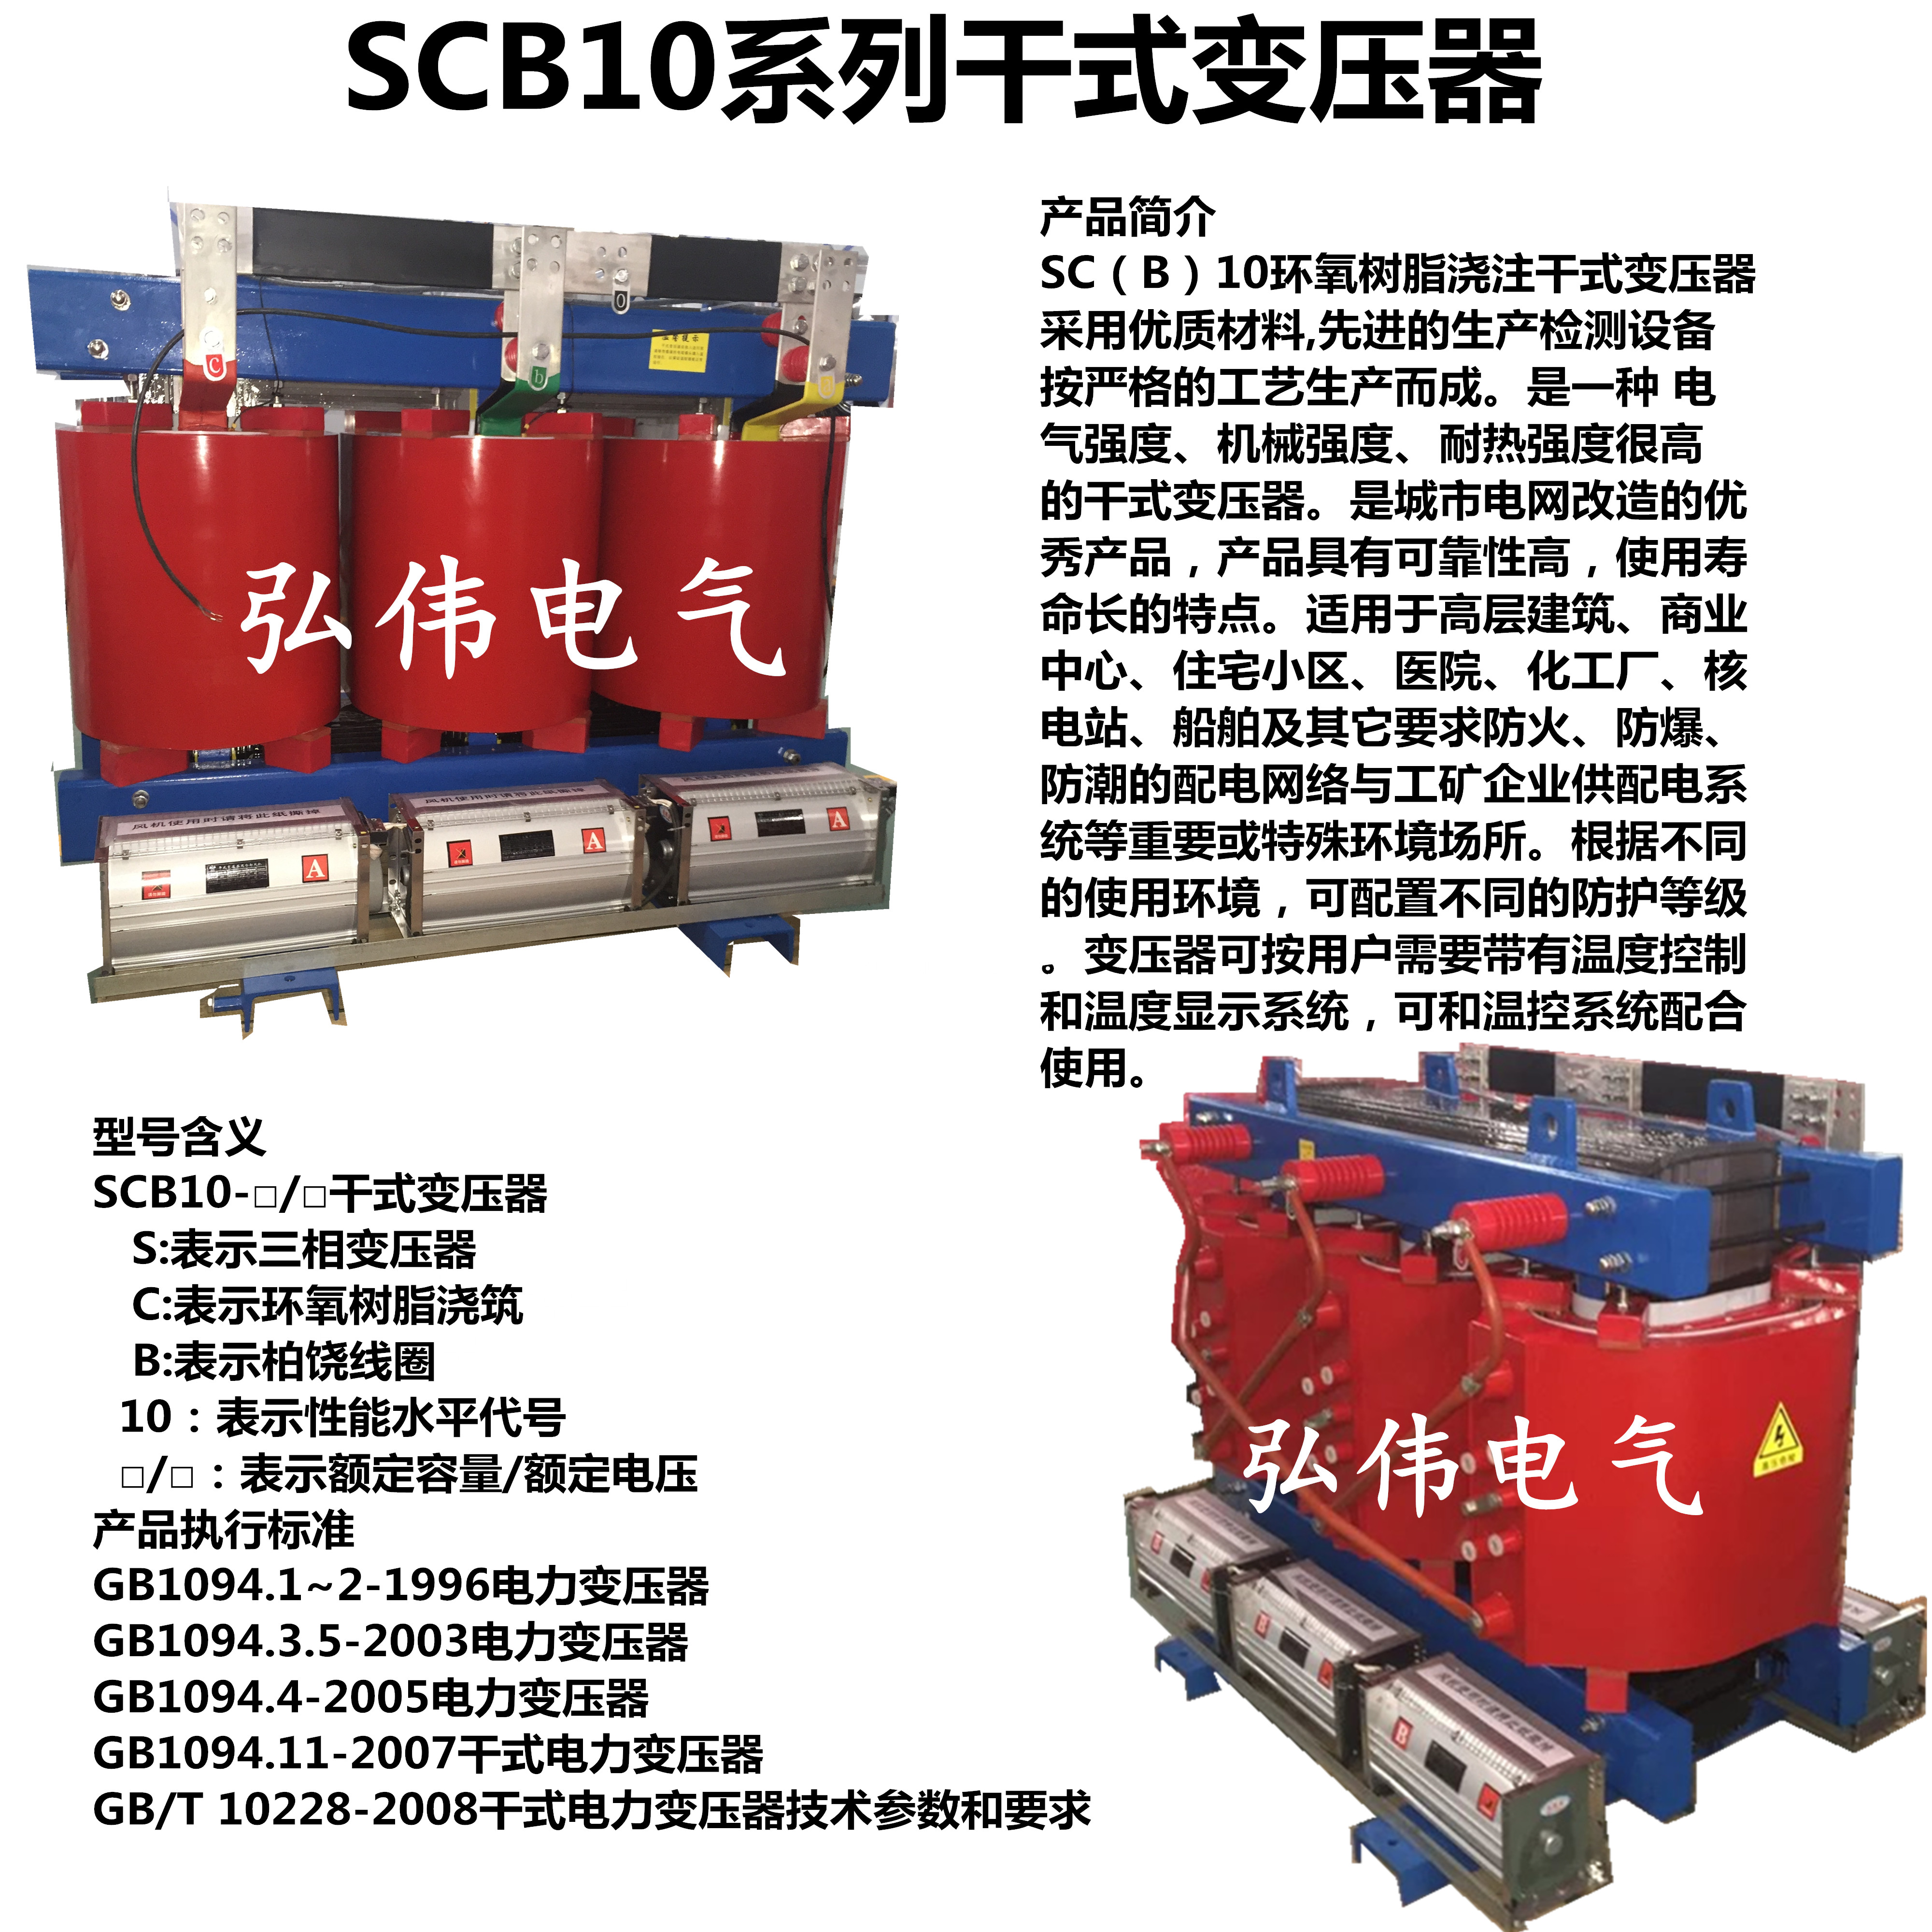 干变厂家 SCB10,干式变压器,干变,干式变压器价格,干式变压器厂家